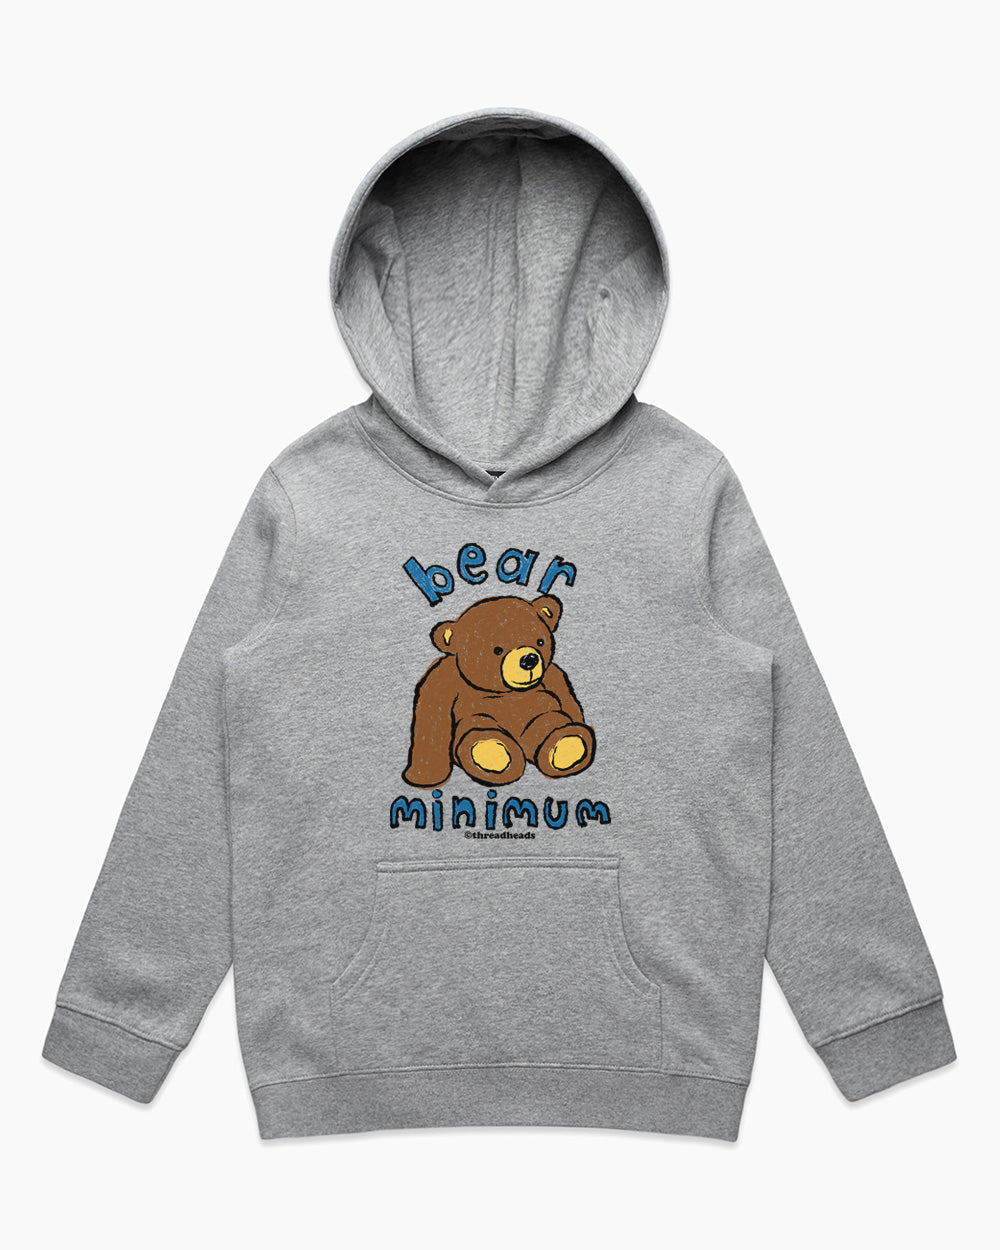 Bear Minimum Kids Hoodie Australia Online Grey